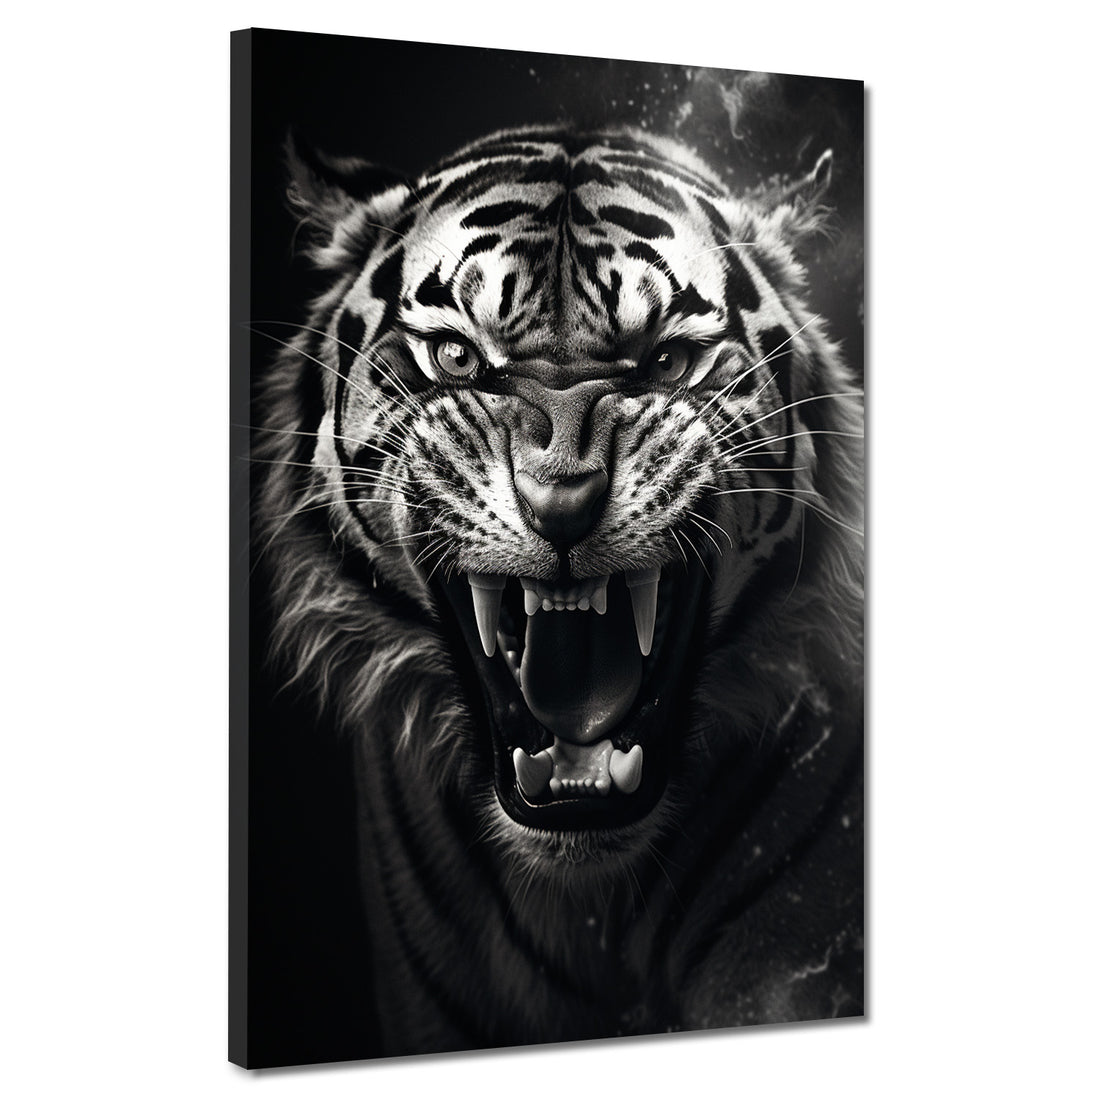 Wandbild Tiger schwarz weiß